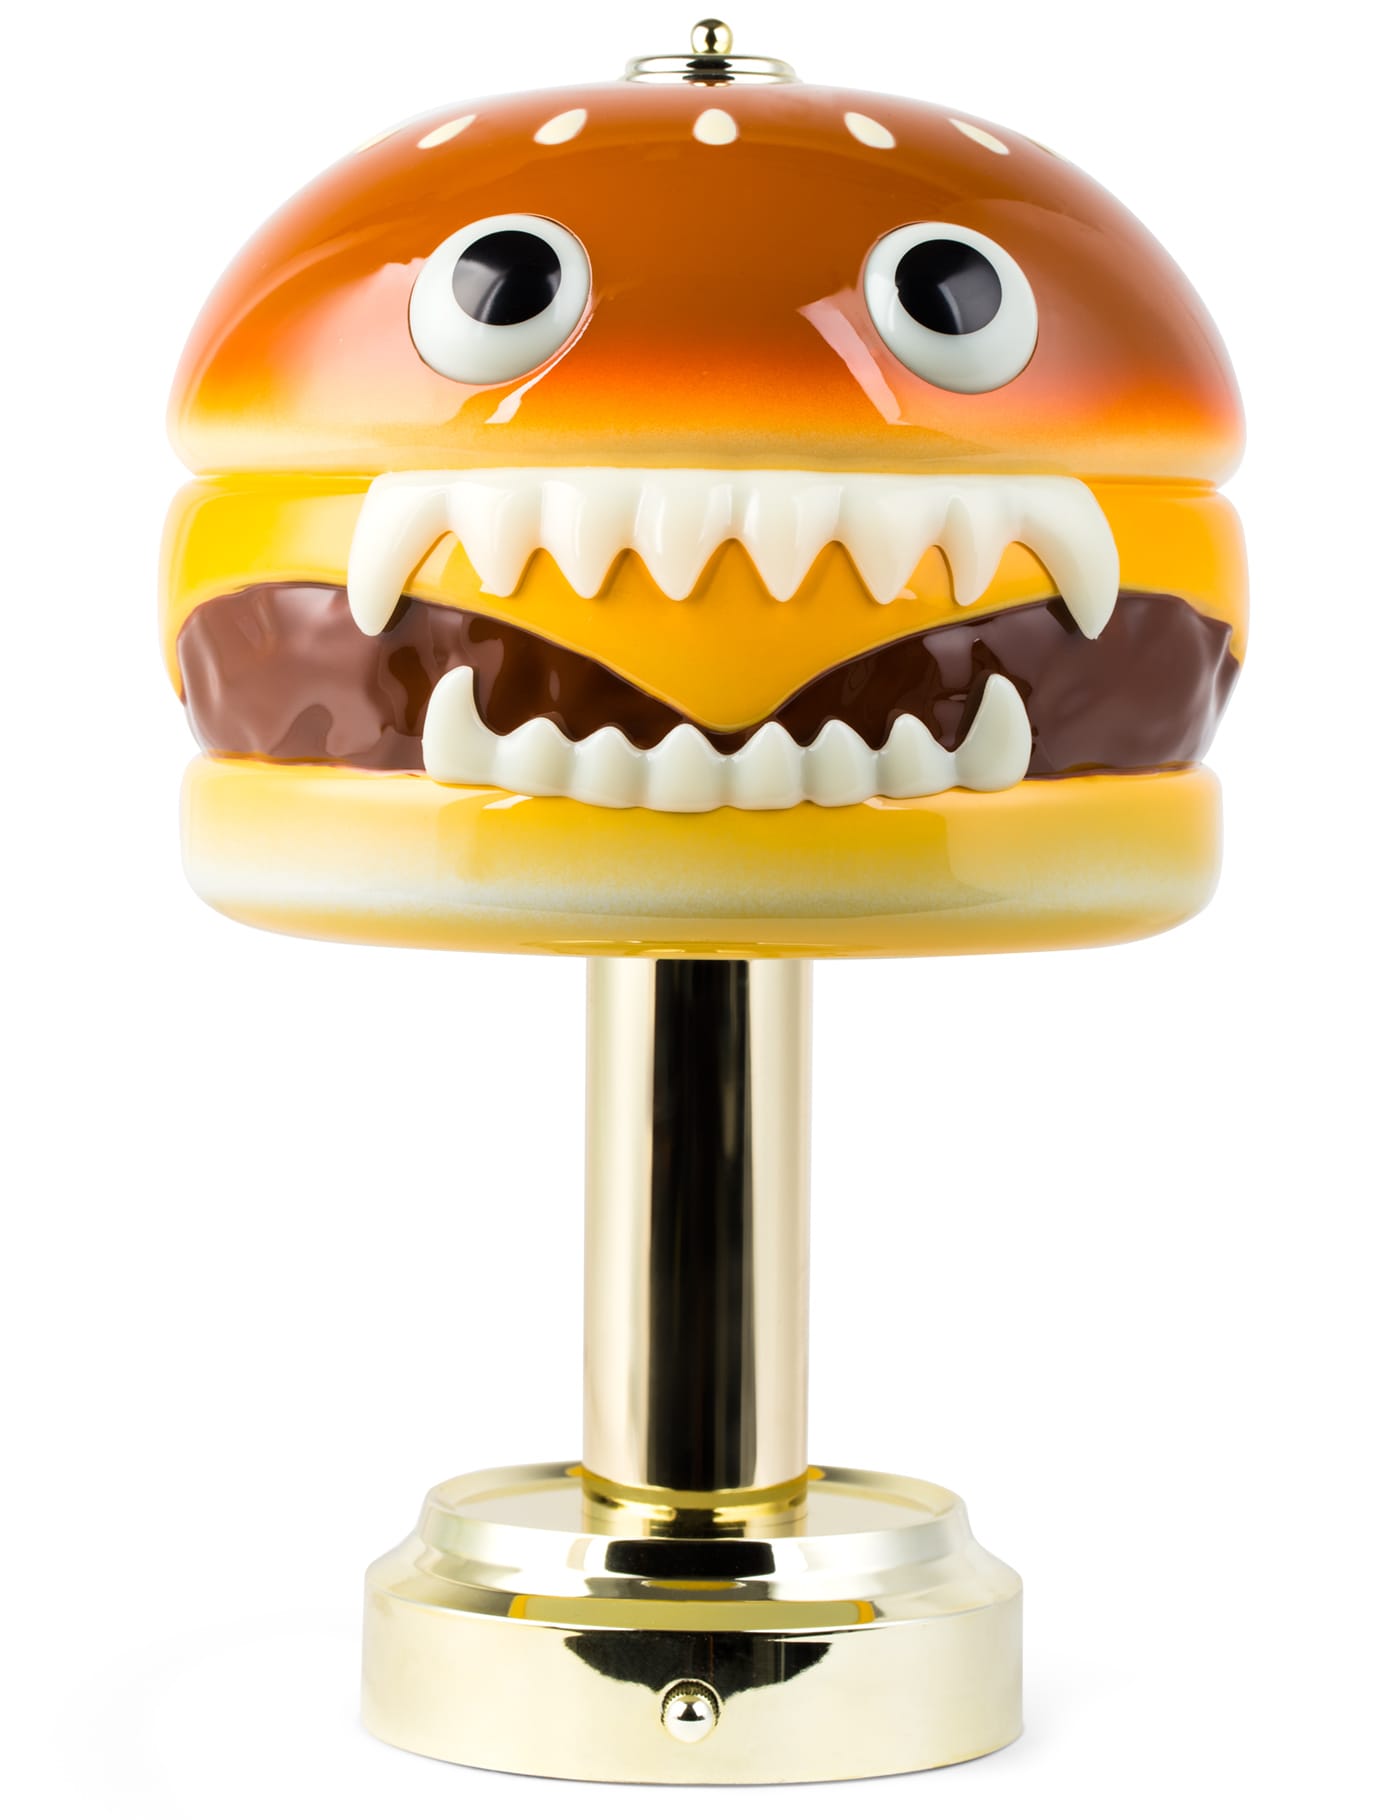 Undercover X Medicom Toy - Undercover X Medicom Toy Hamburger Lamp 